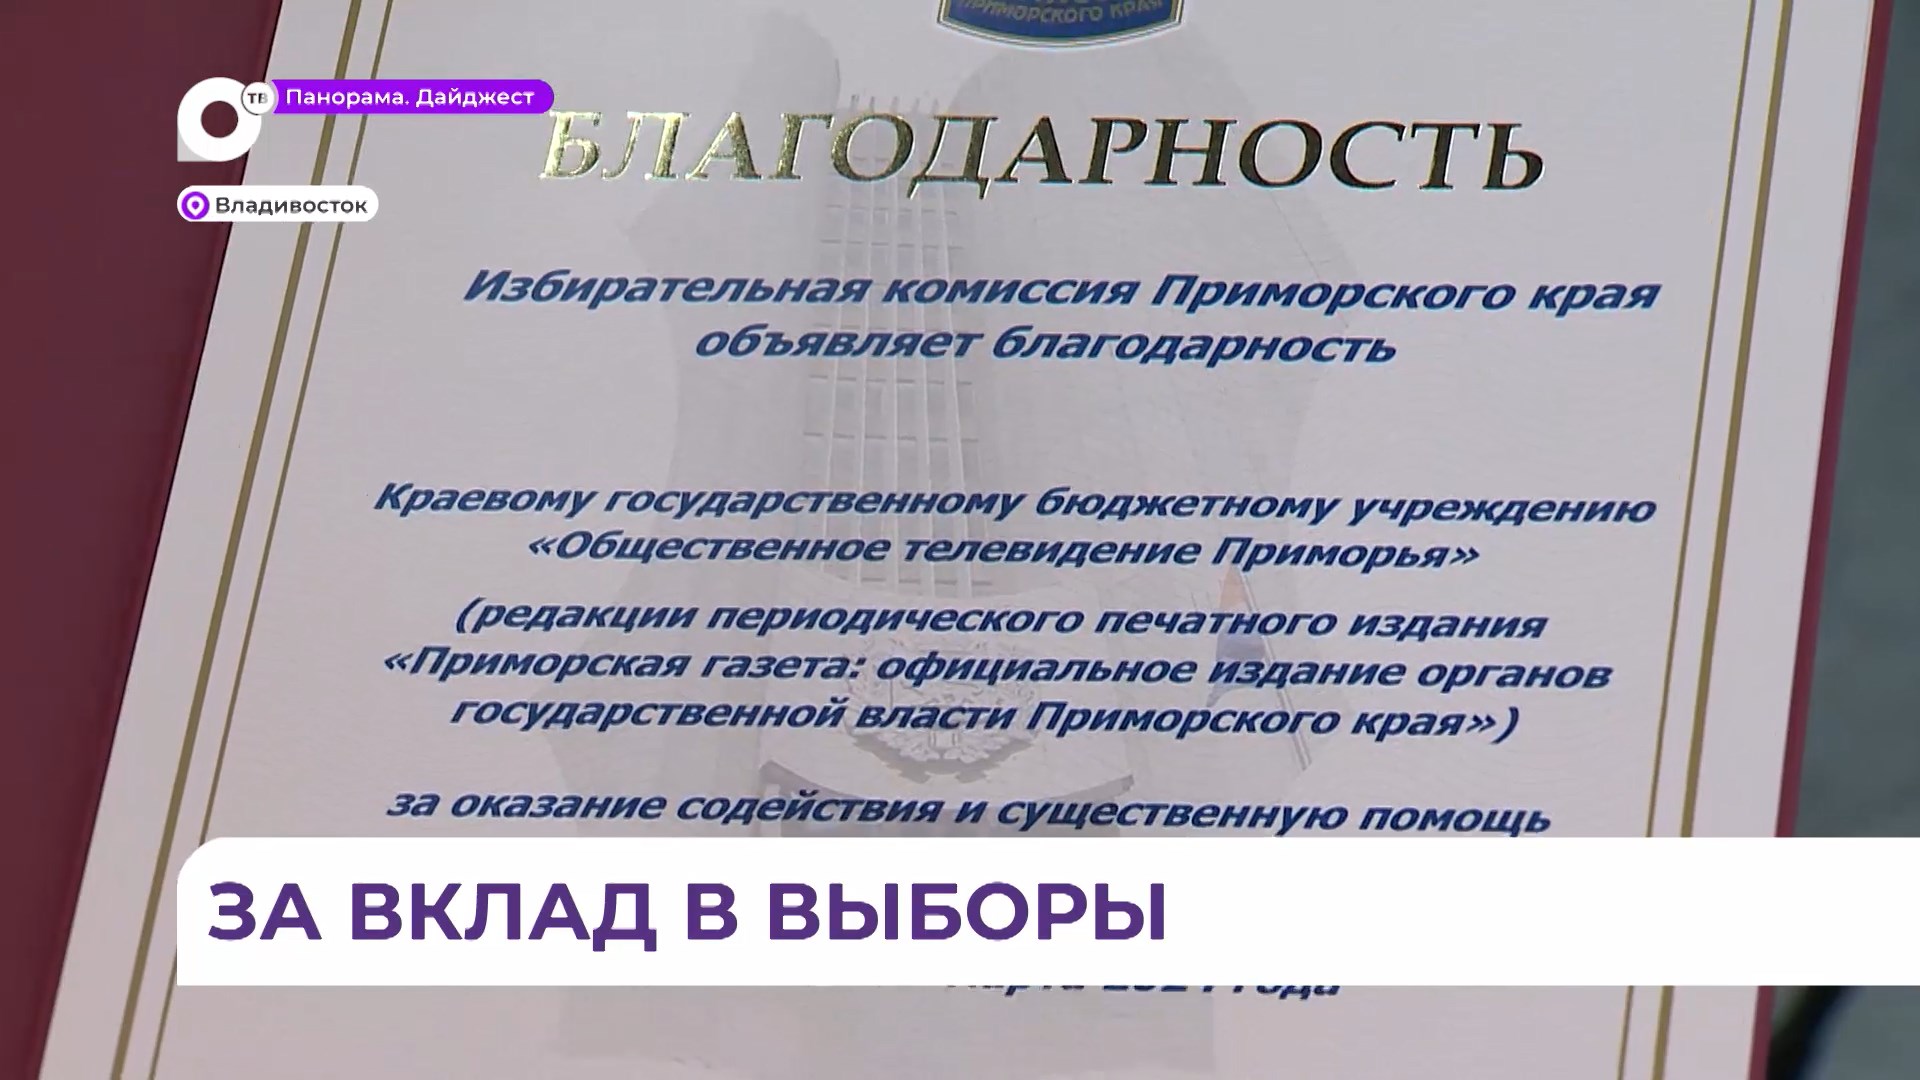 Коллектив «Приморской газеты» наградили за их труд